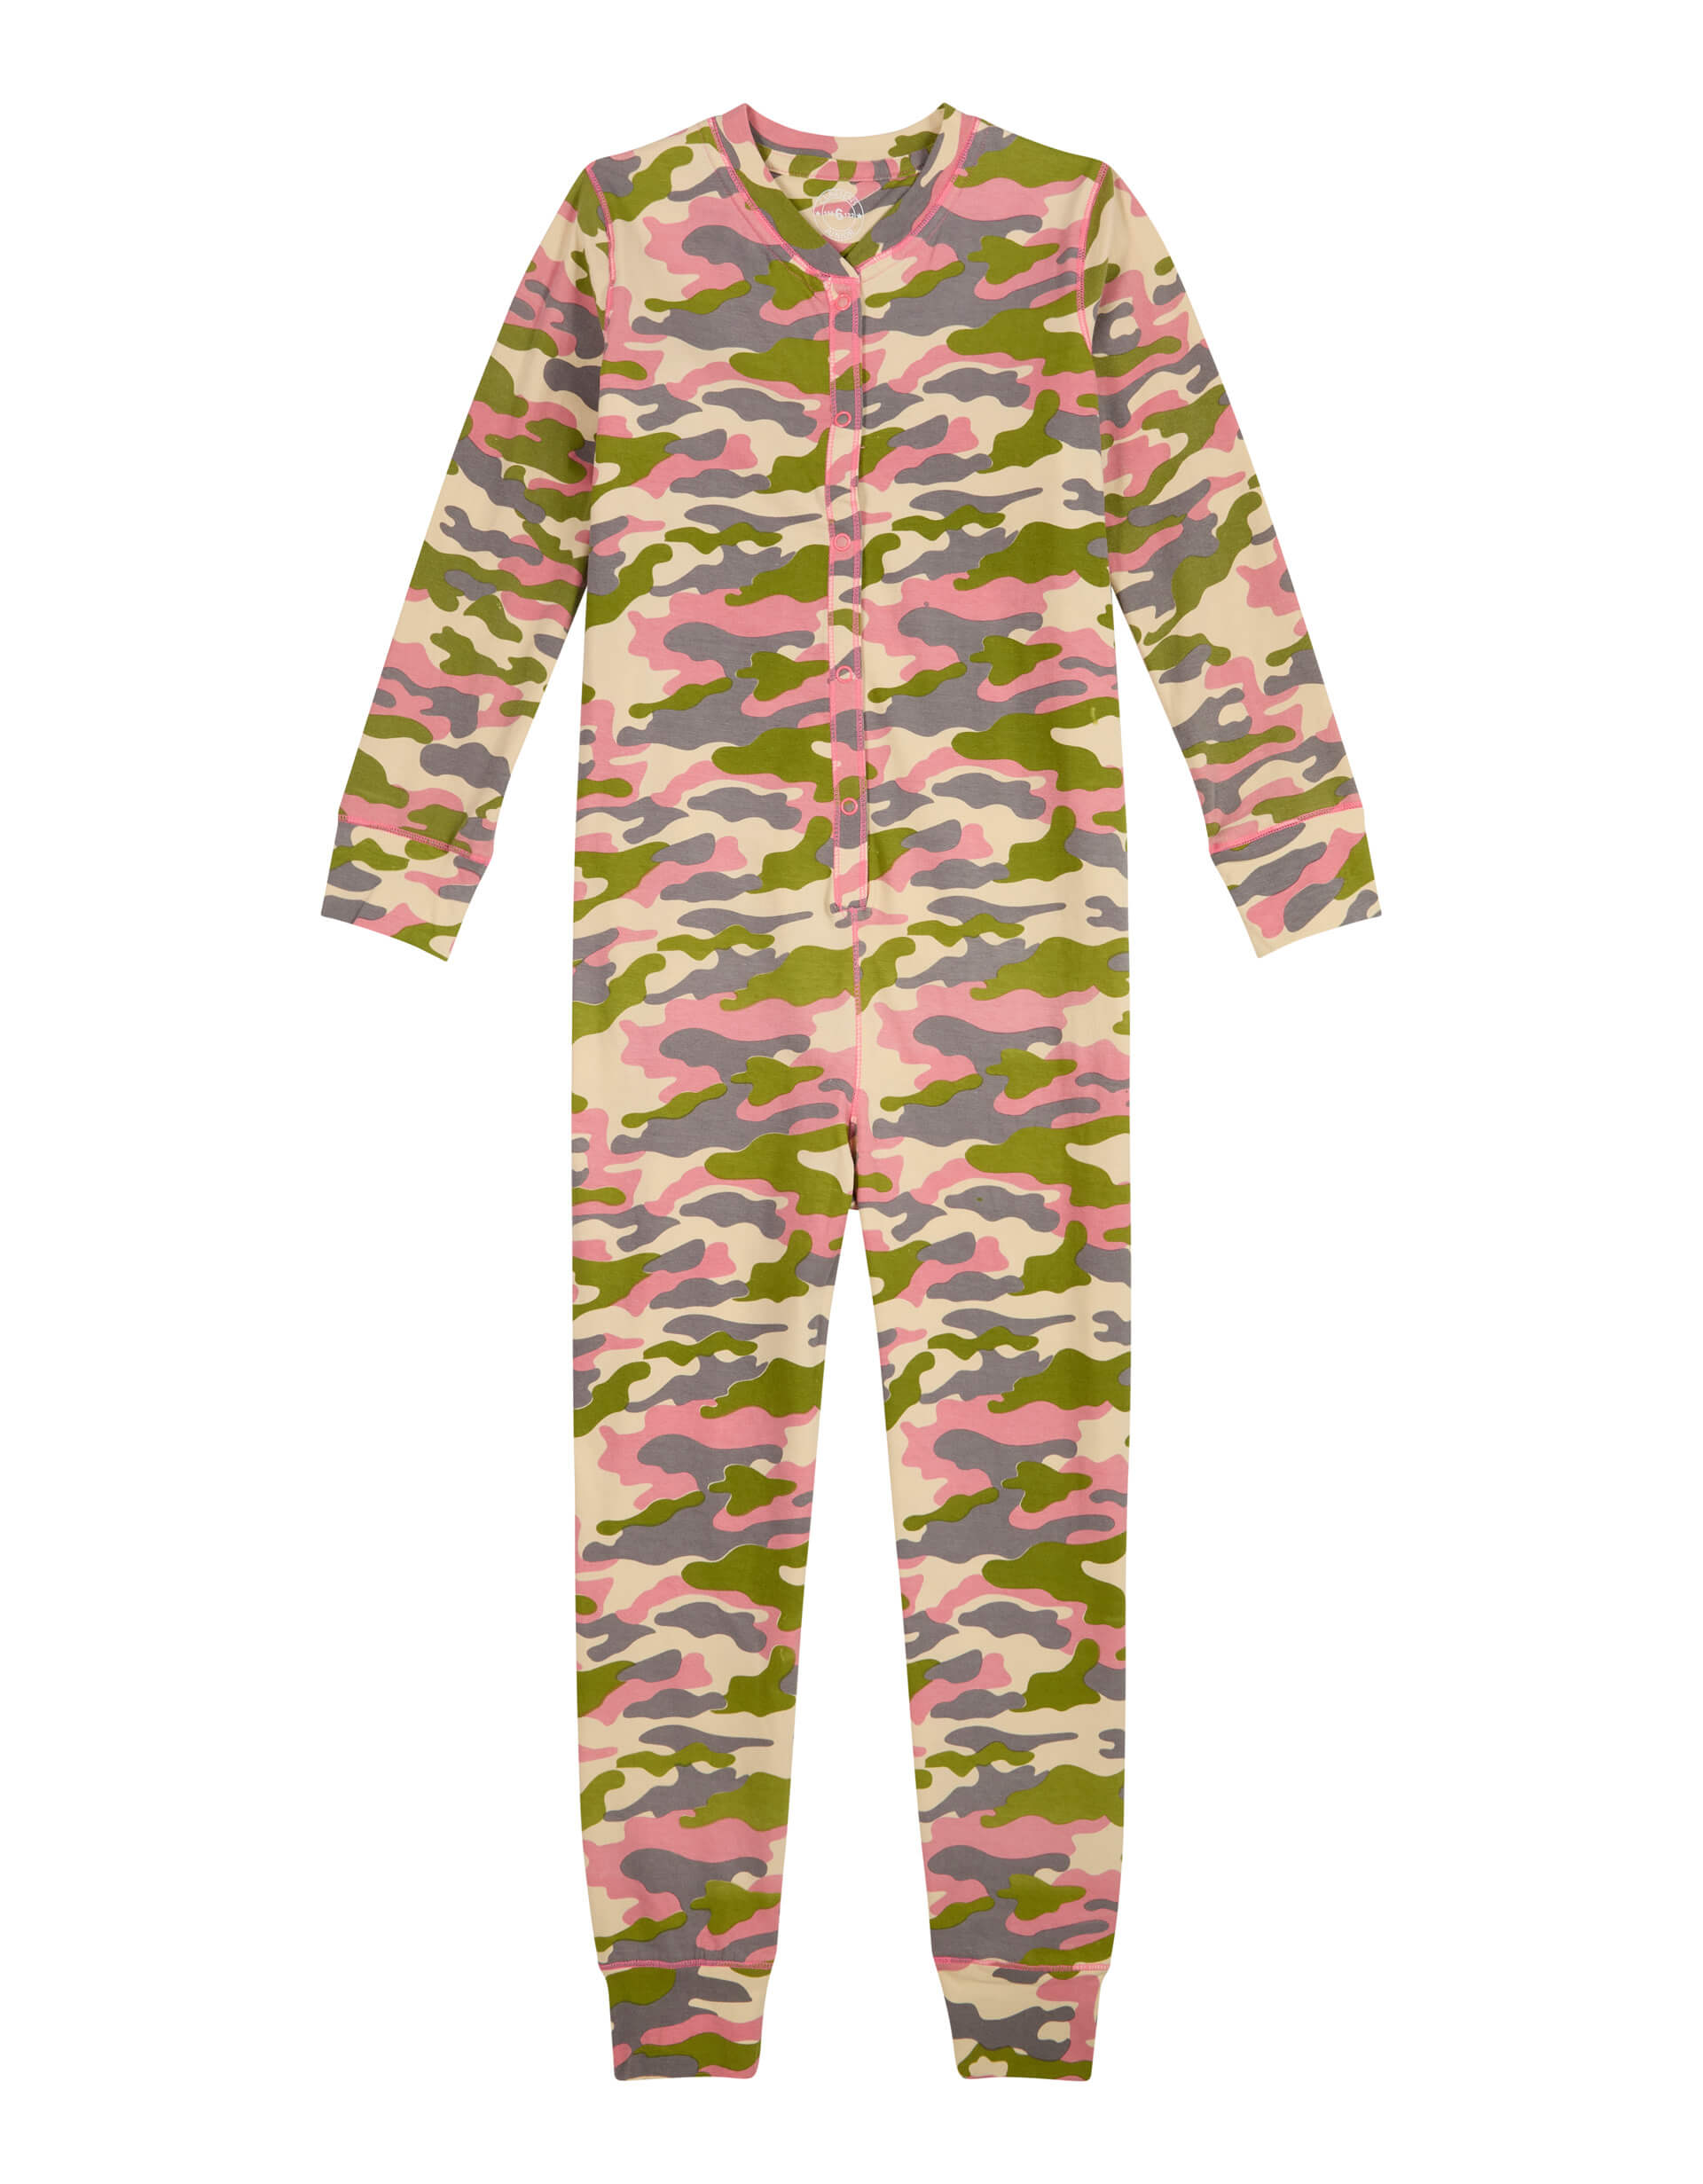 Girls Pyjama Suit